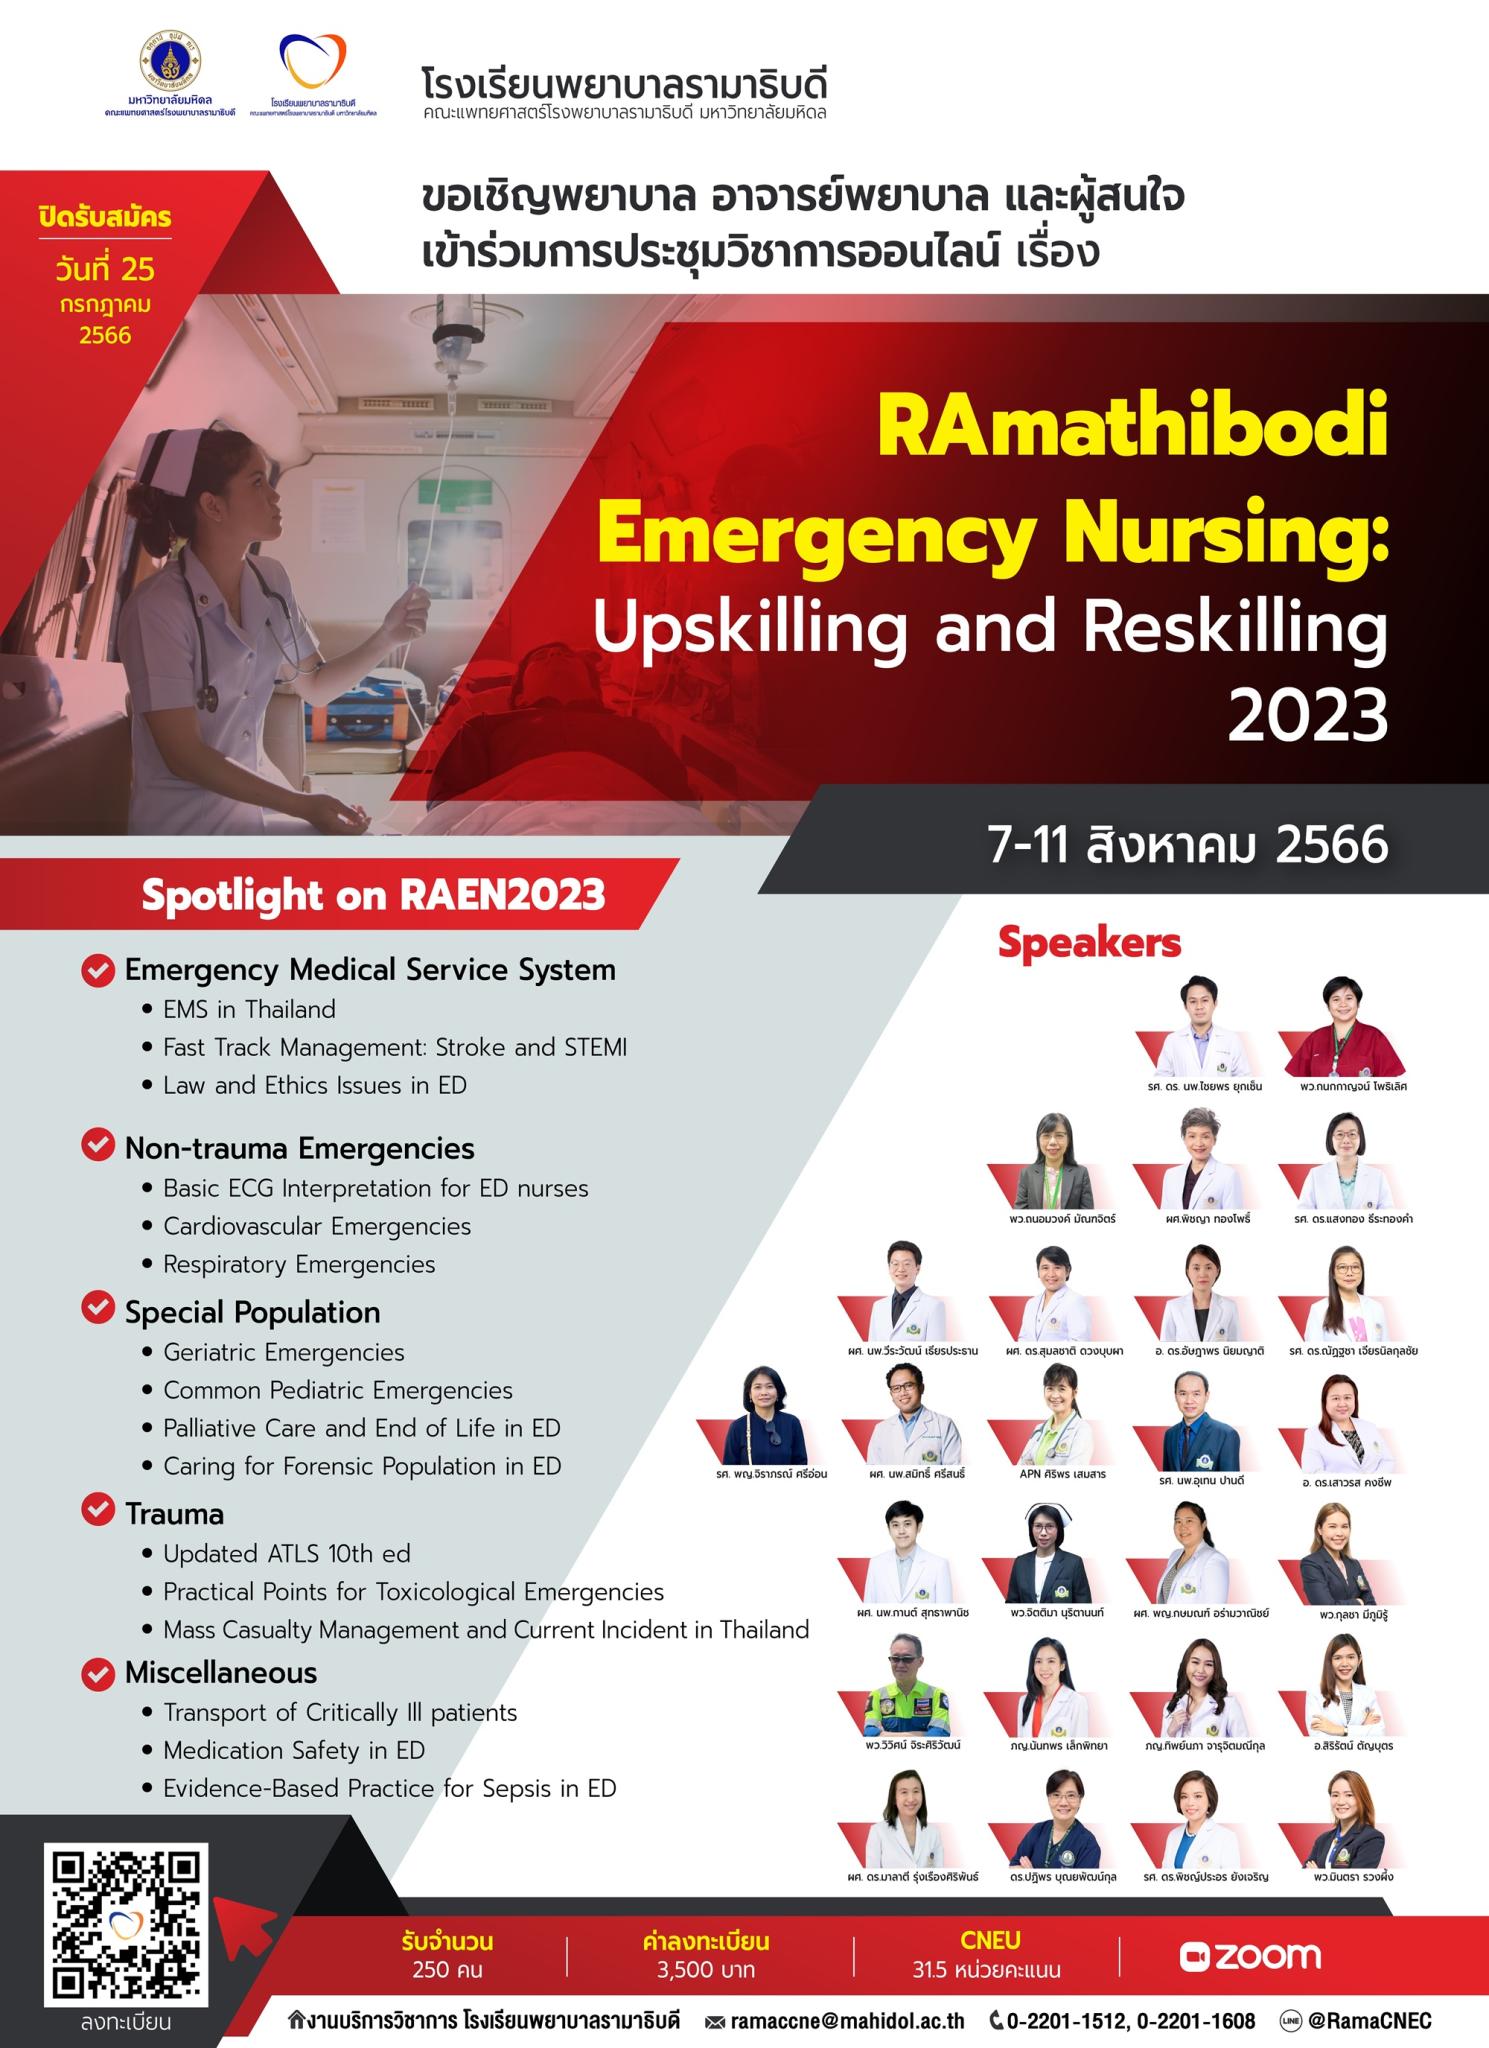 RAmathibodi Emergency Nursing: Upskilling and Reskilling 2023